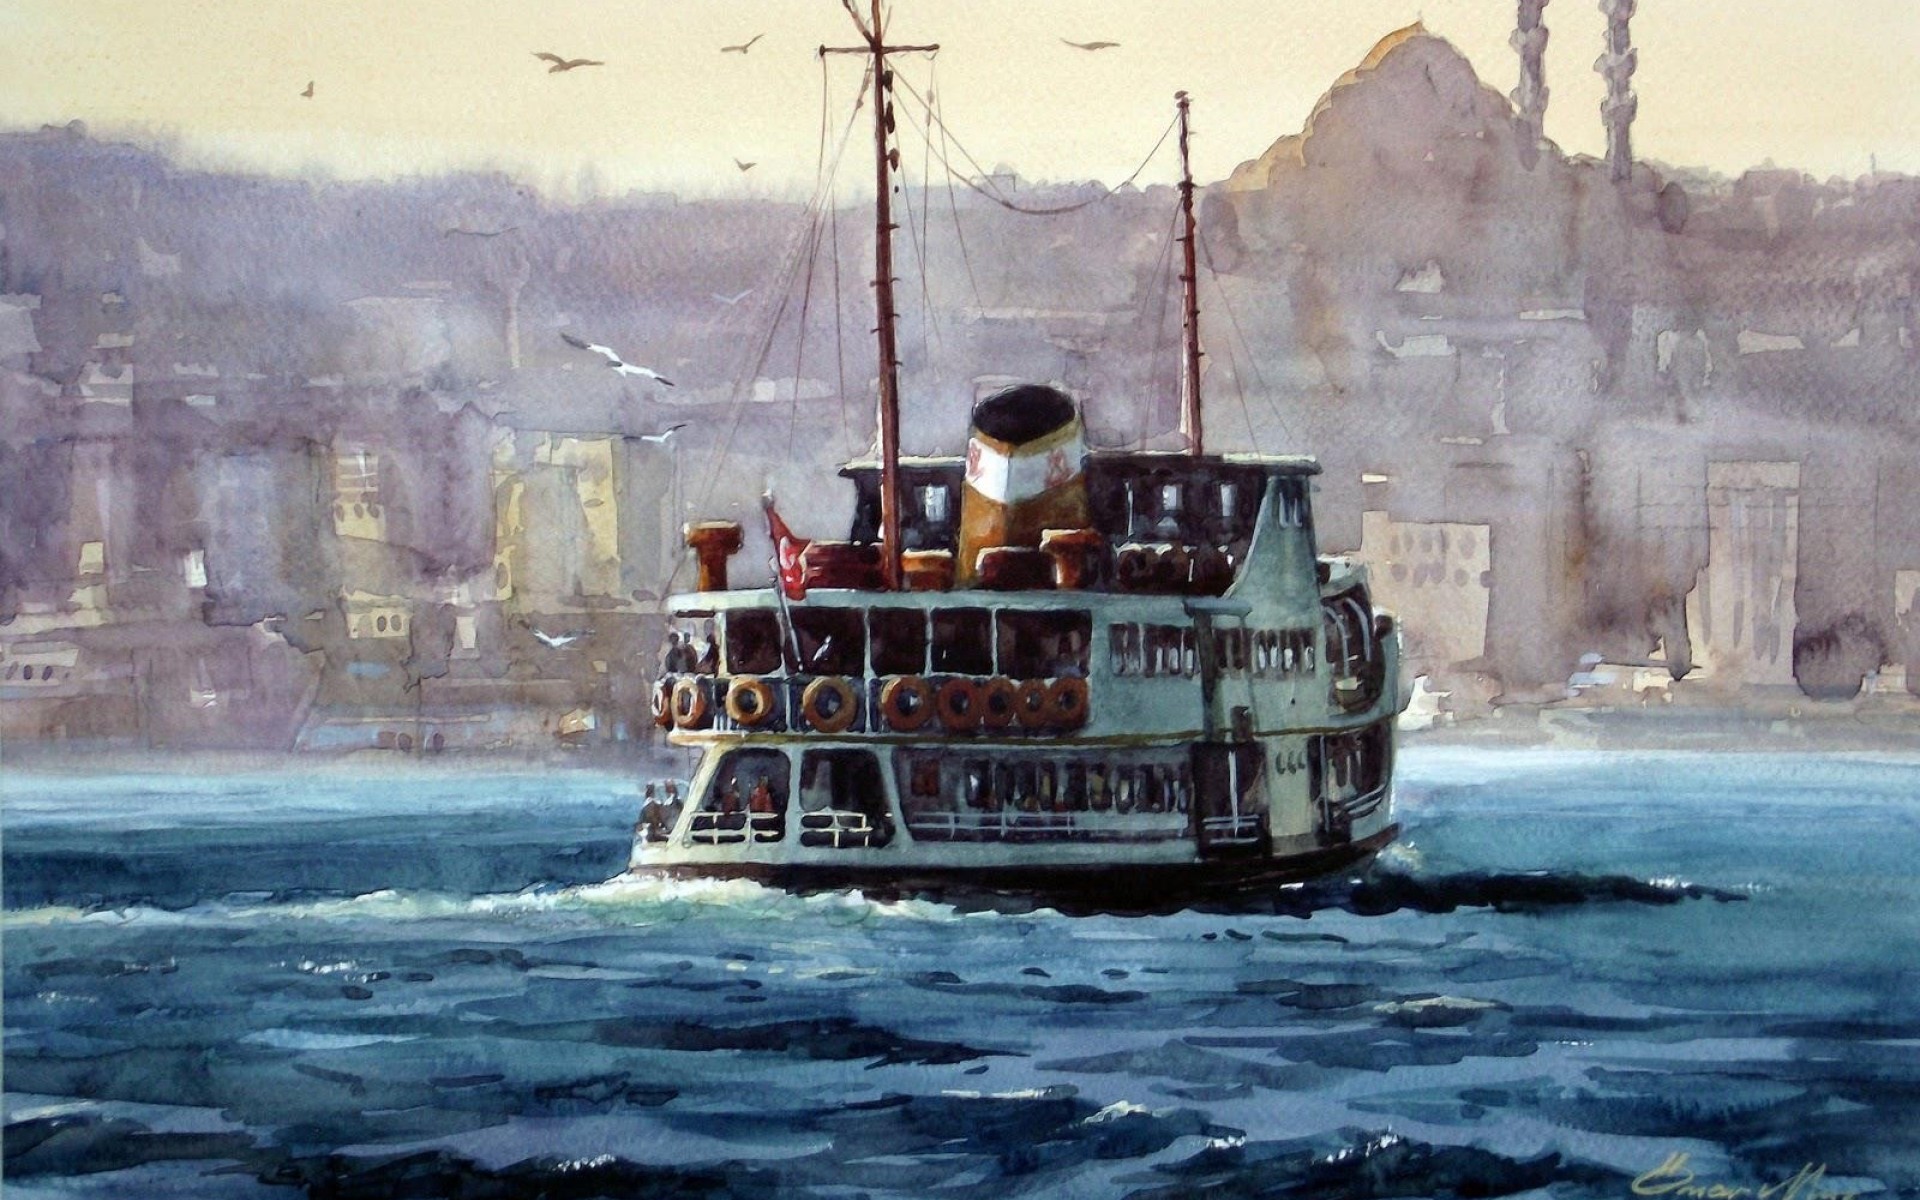 Окно парохода. Пароход Стамбул. Пароходы в живописи. Пейзаж с пароходом. Пароход картина.